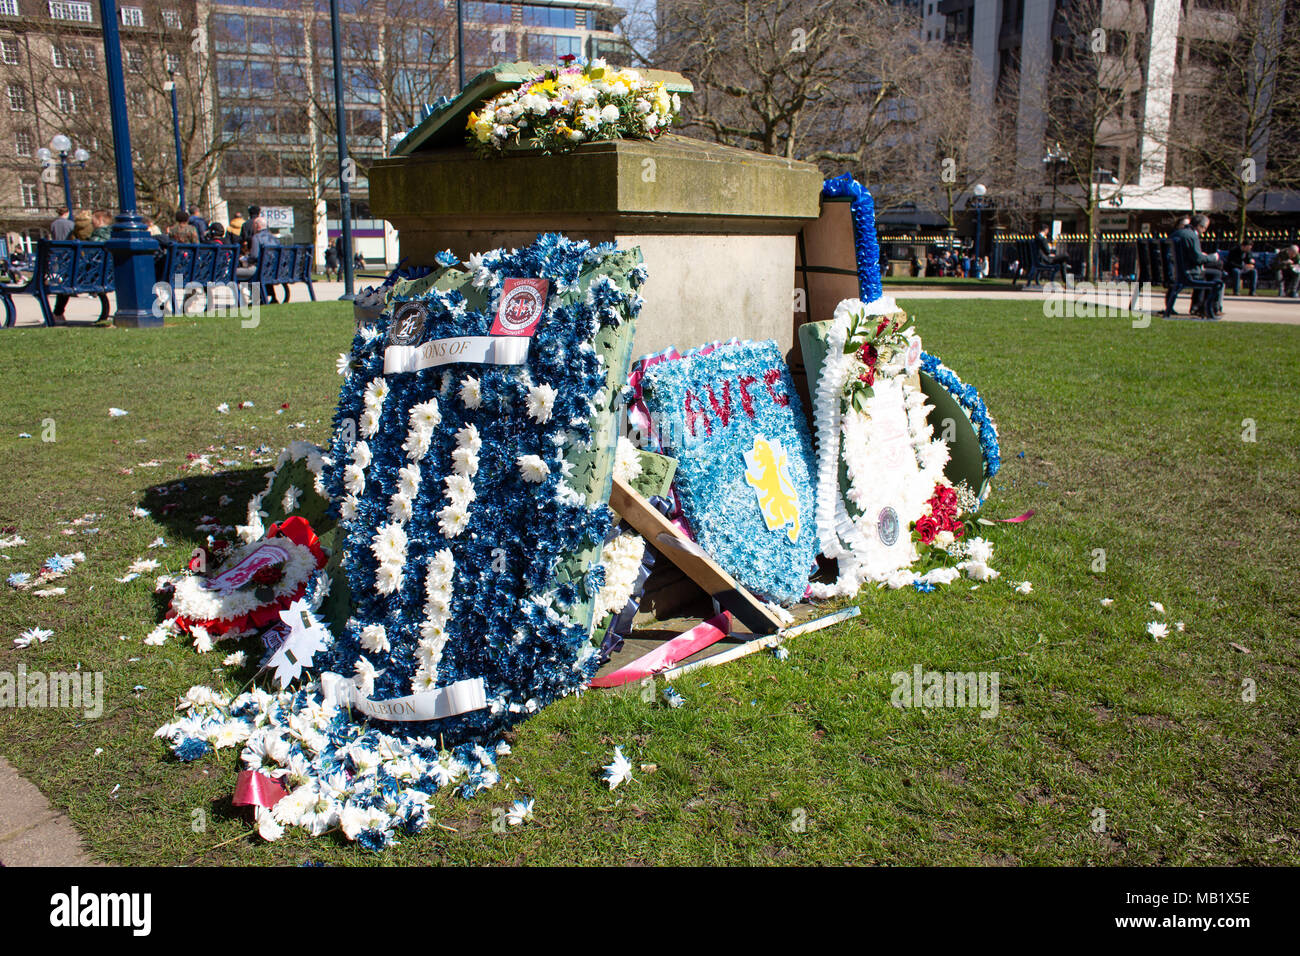 El memorial en Birmingham catedral motivos a las 21 personas que murieron en los atentados de 1974, pub. El monumento está decorado ingenio elementos desde una reciente marzo Foto de stock